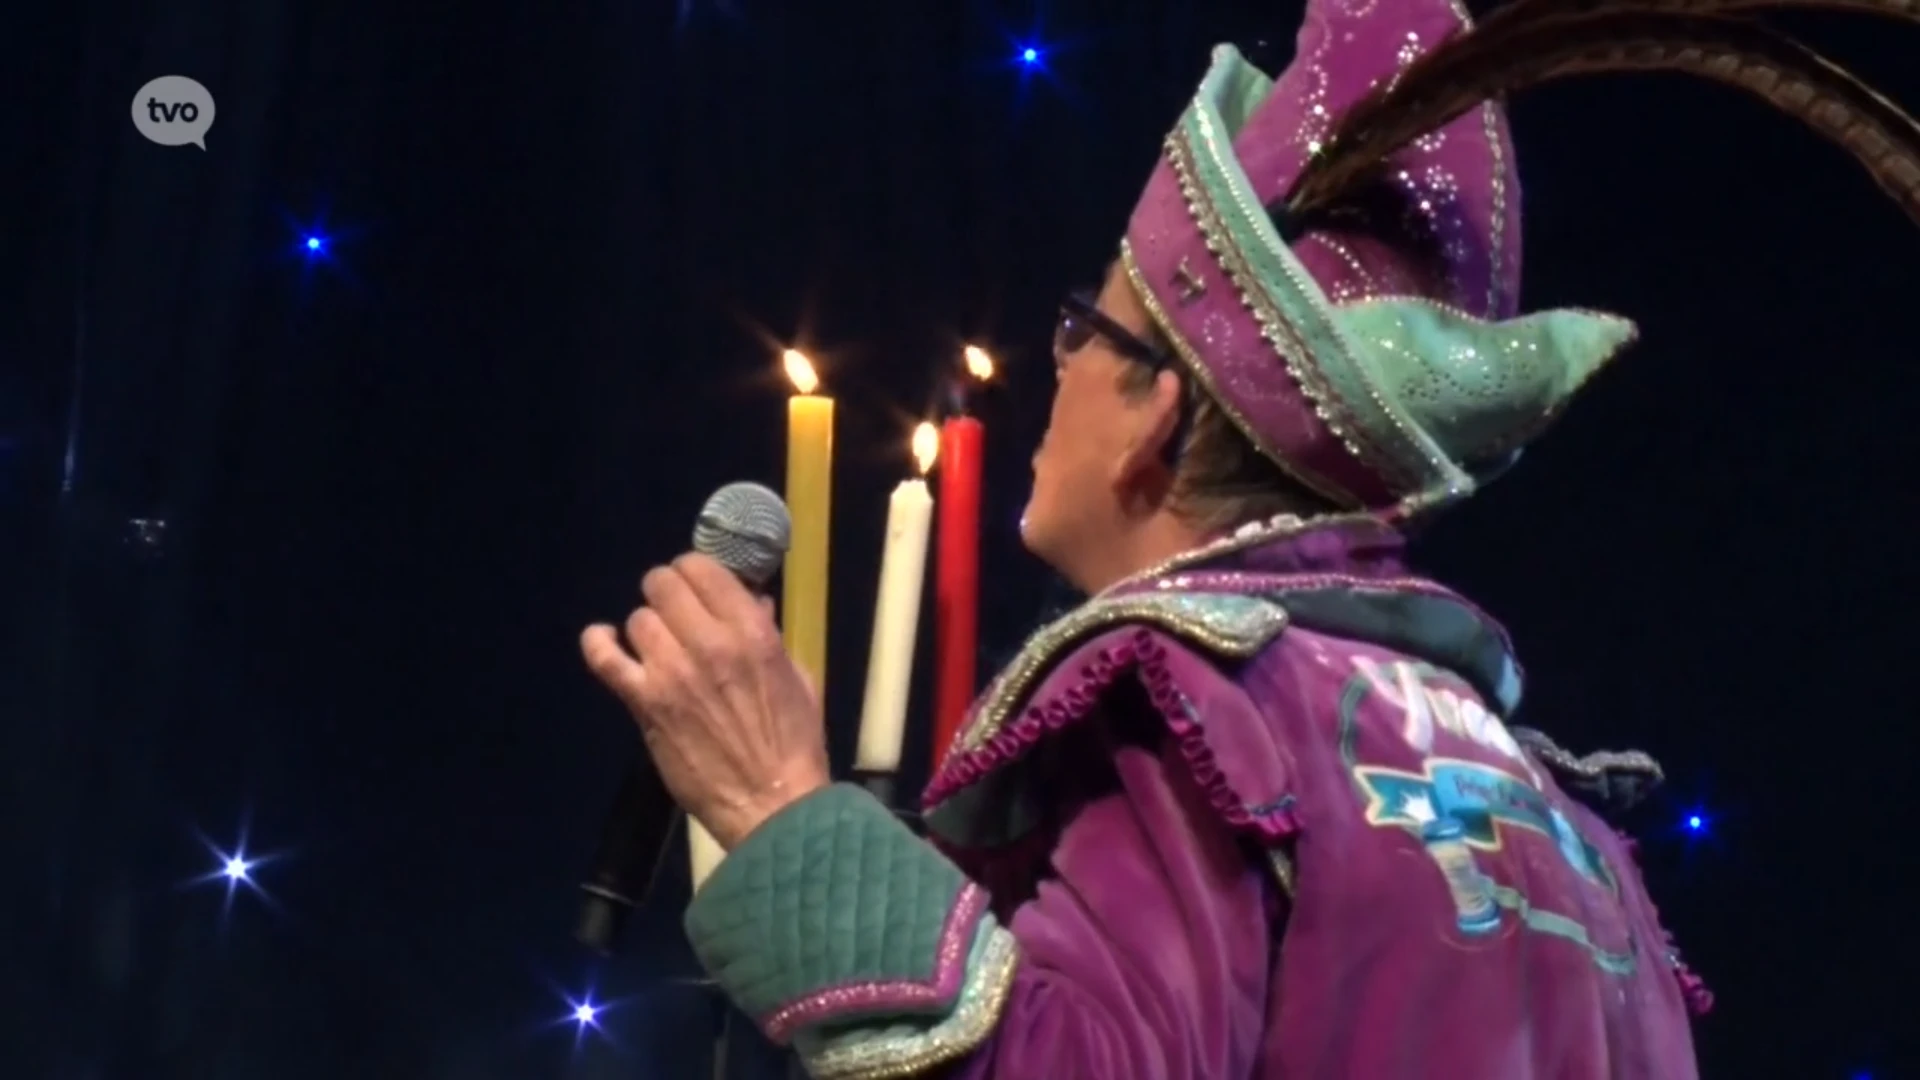 Yvan zwaait na drie jaar (!) af als Prins Carnaval met emotioneel afscheidslied